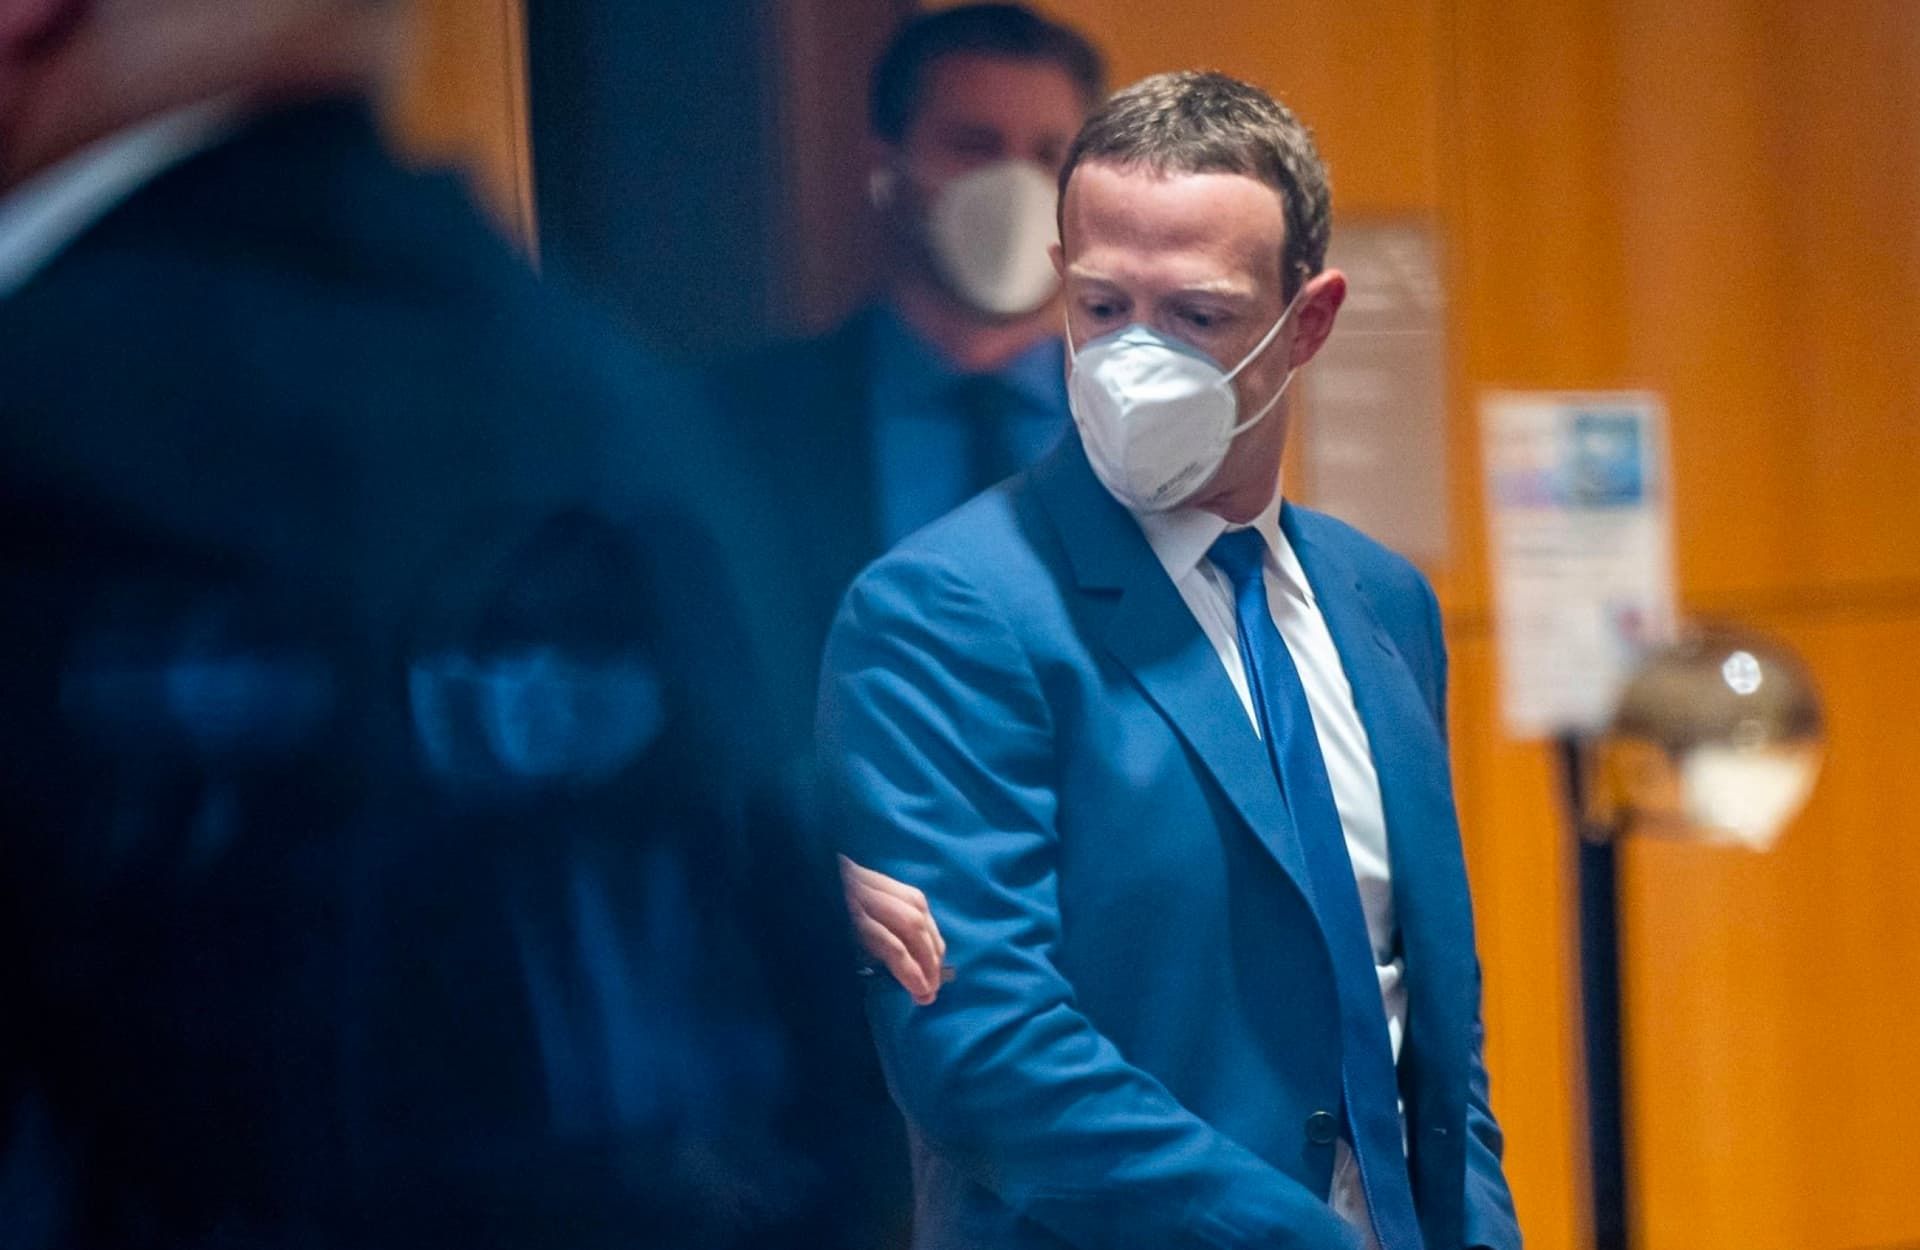 مارک زاکربرگ / Mark Zuckerberg با کت شلوار آبی و ماسک